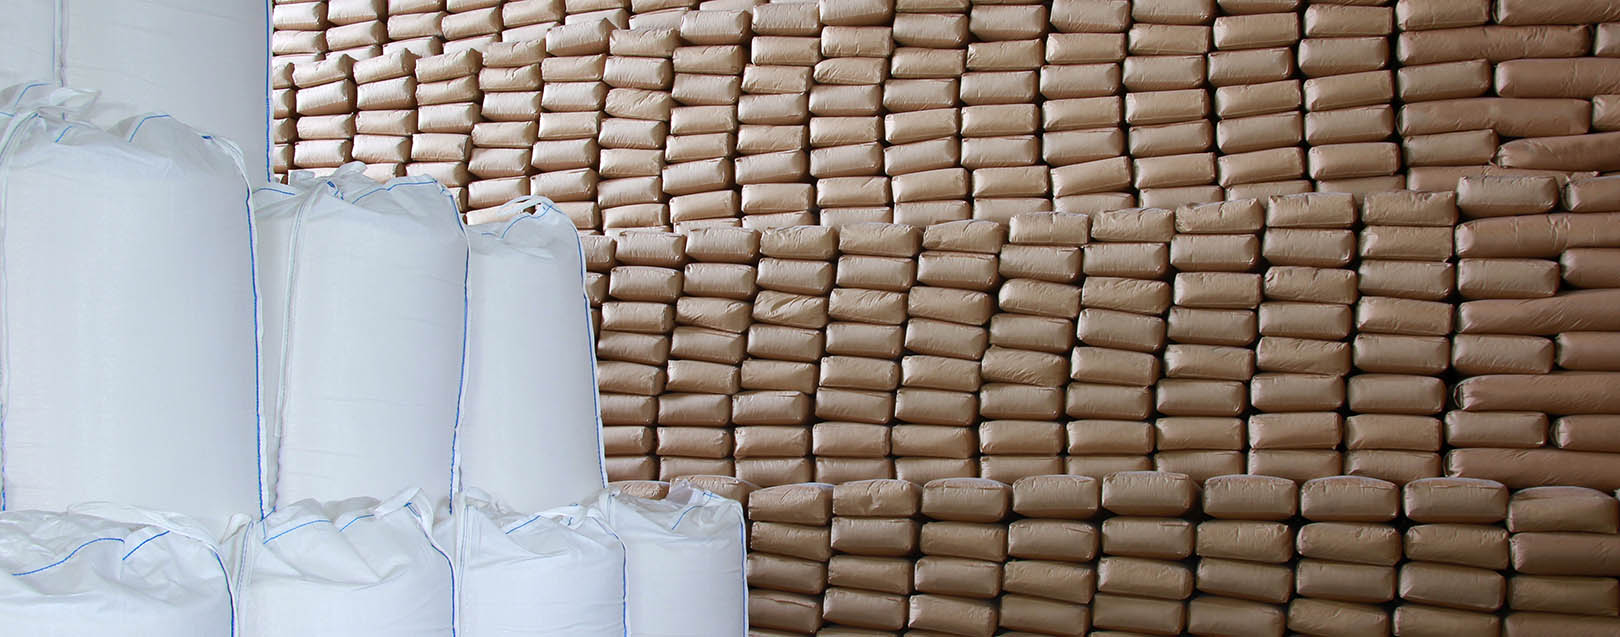 Maharashtra imposes stockholding limits on sugar